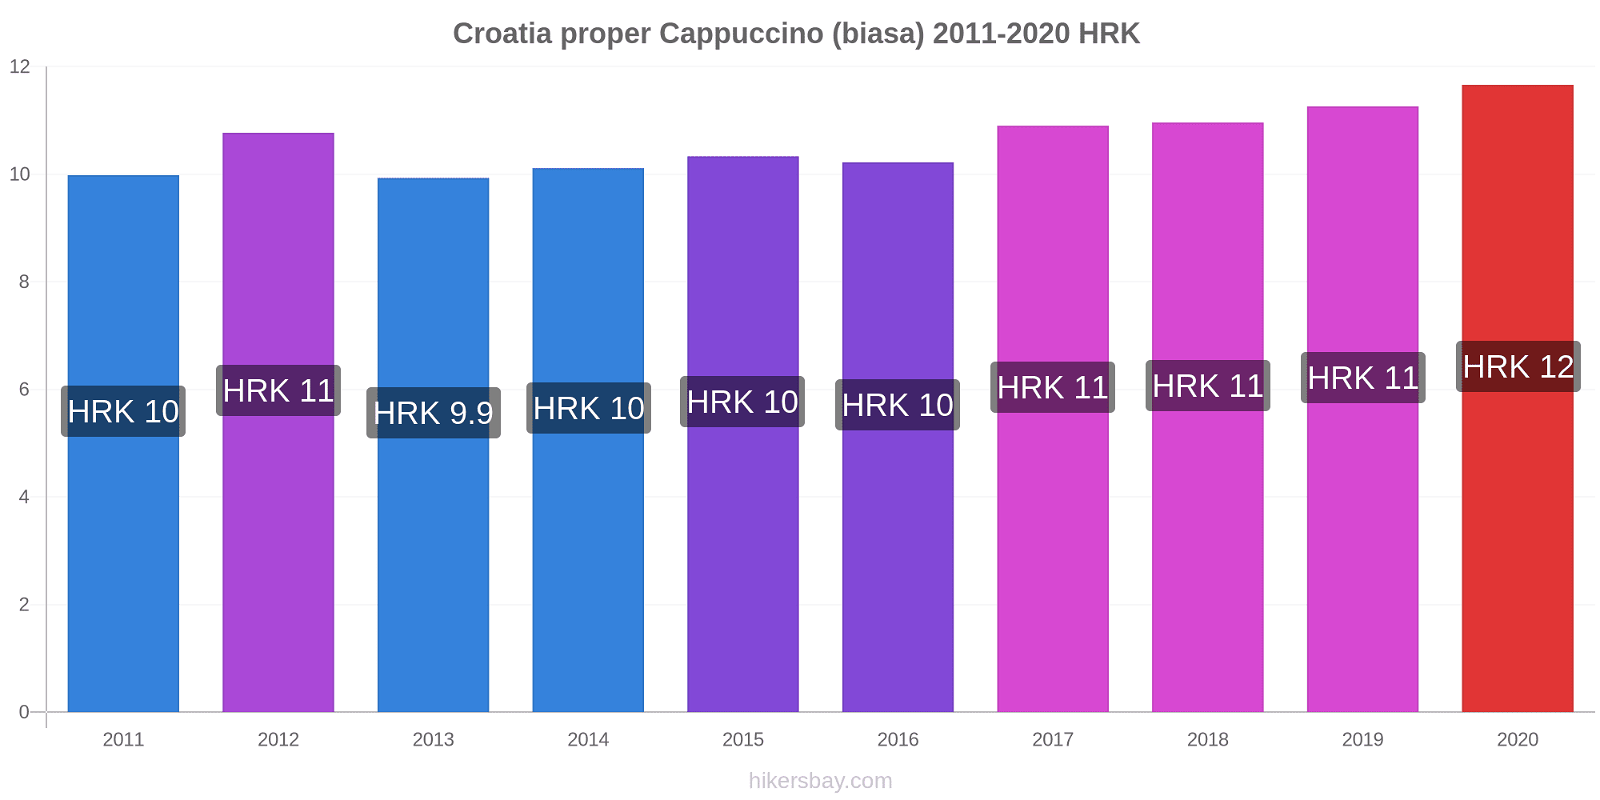 Croatia proper perubahan harga Cappuccino (biasa) hikersbay.com